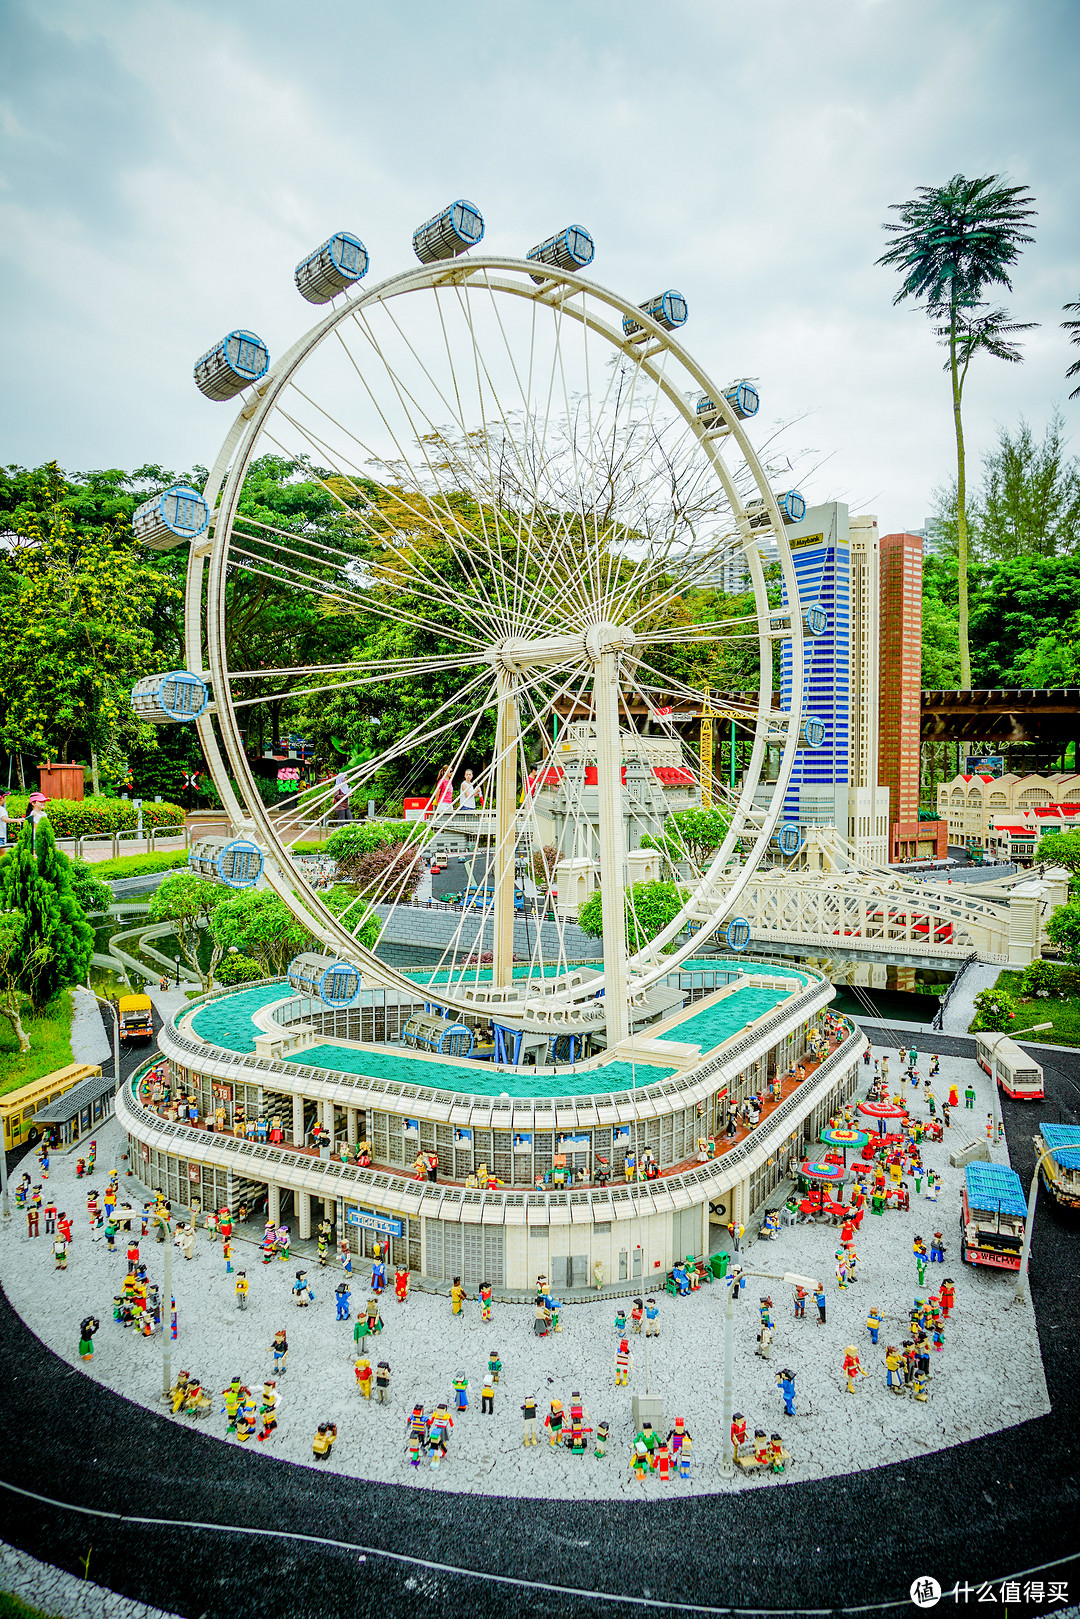 【史上最全】马来西亚乐高乐园游玩攻略，不走回头路的游玩体验